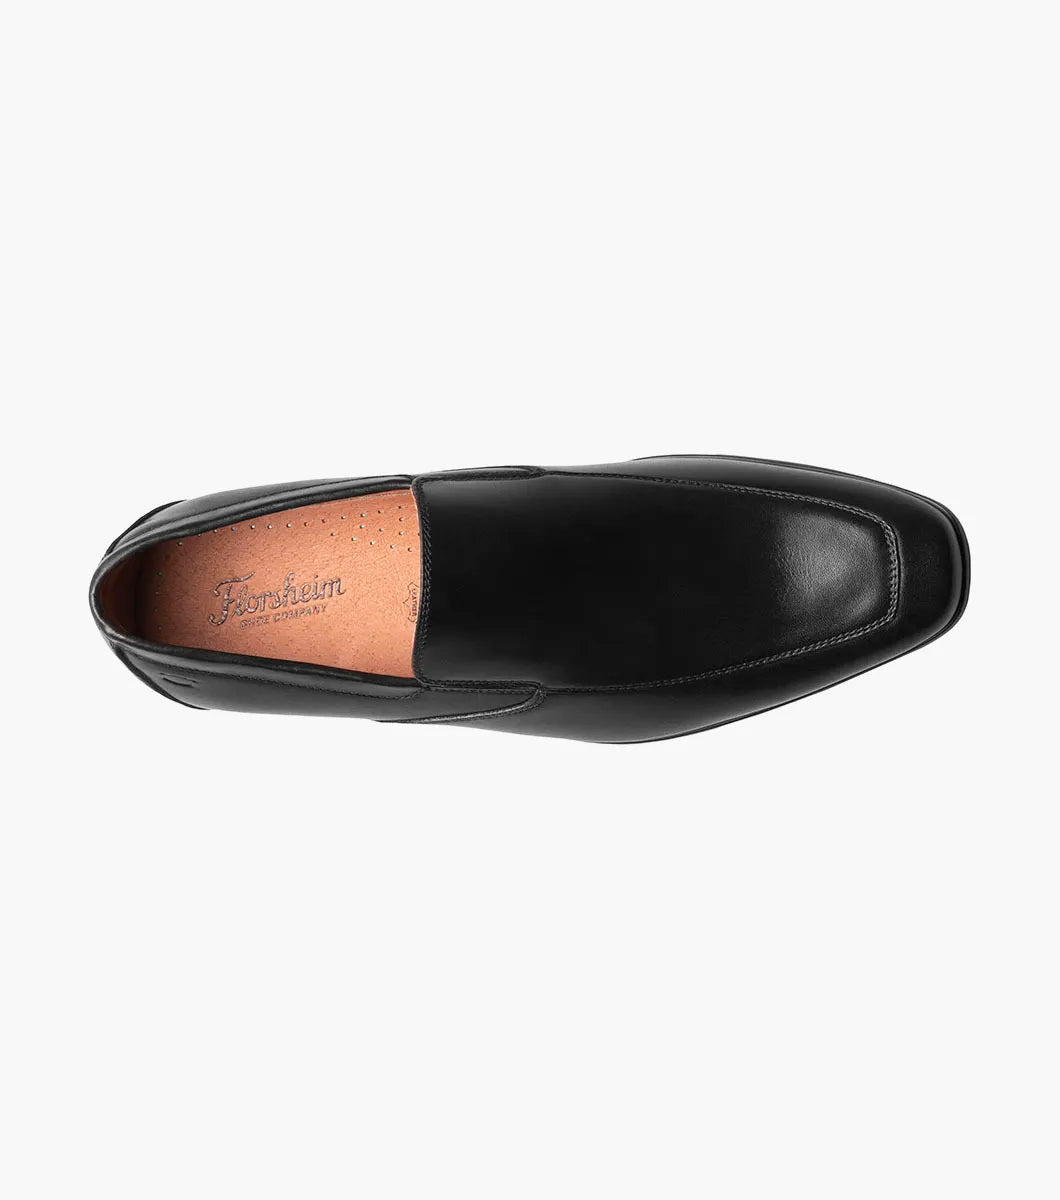 Florsheim Mens Postino Black Slip-on Loafer Leather Dress Shoes